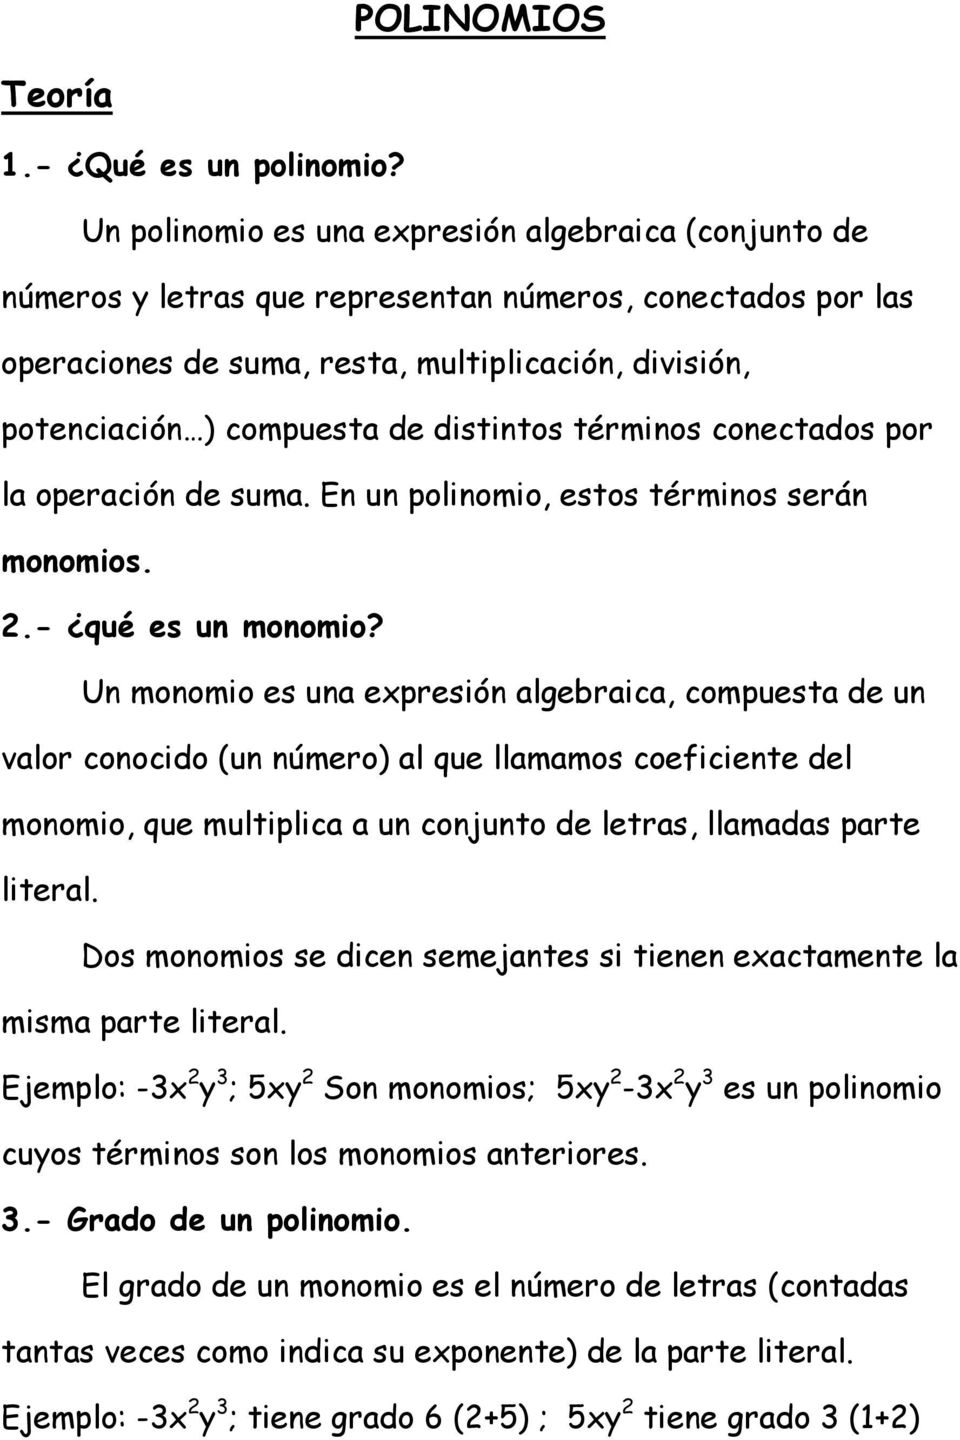 distintos términos conectados por la operación de suma. En un polinomio, estos términos serán monomios. 2.- qué es un monomio?